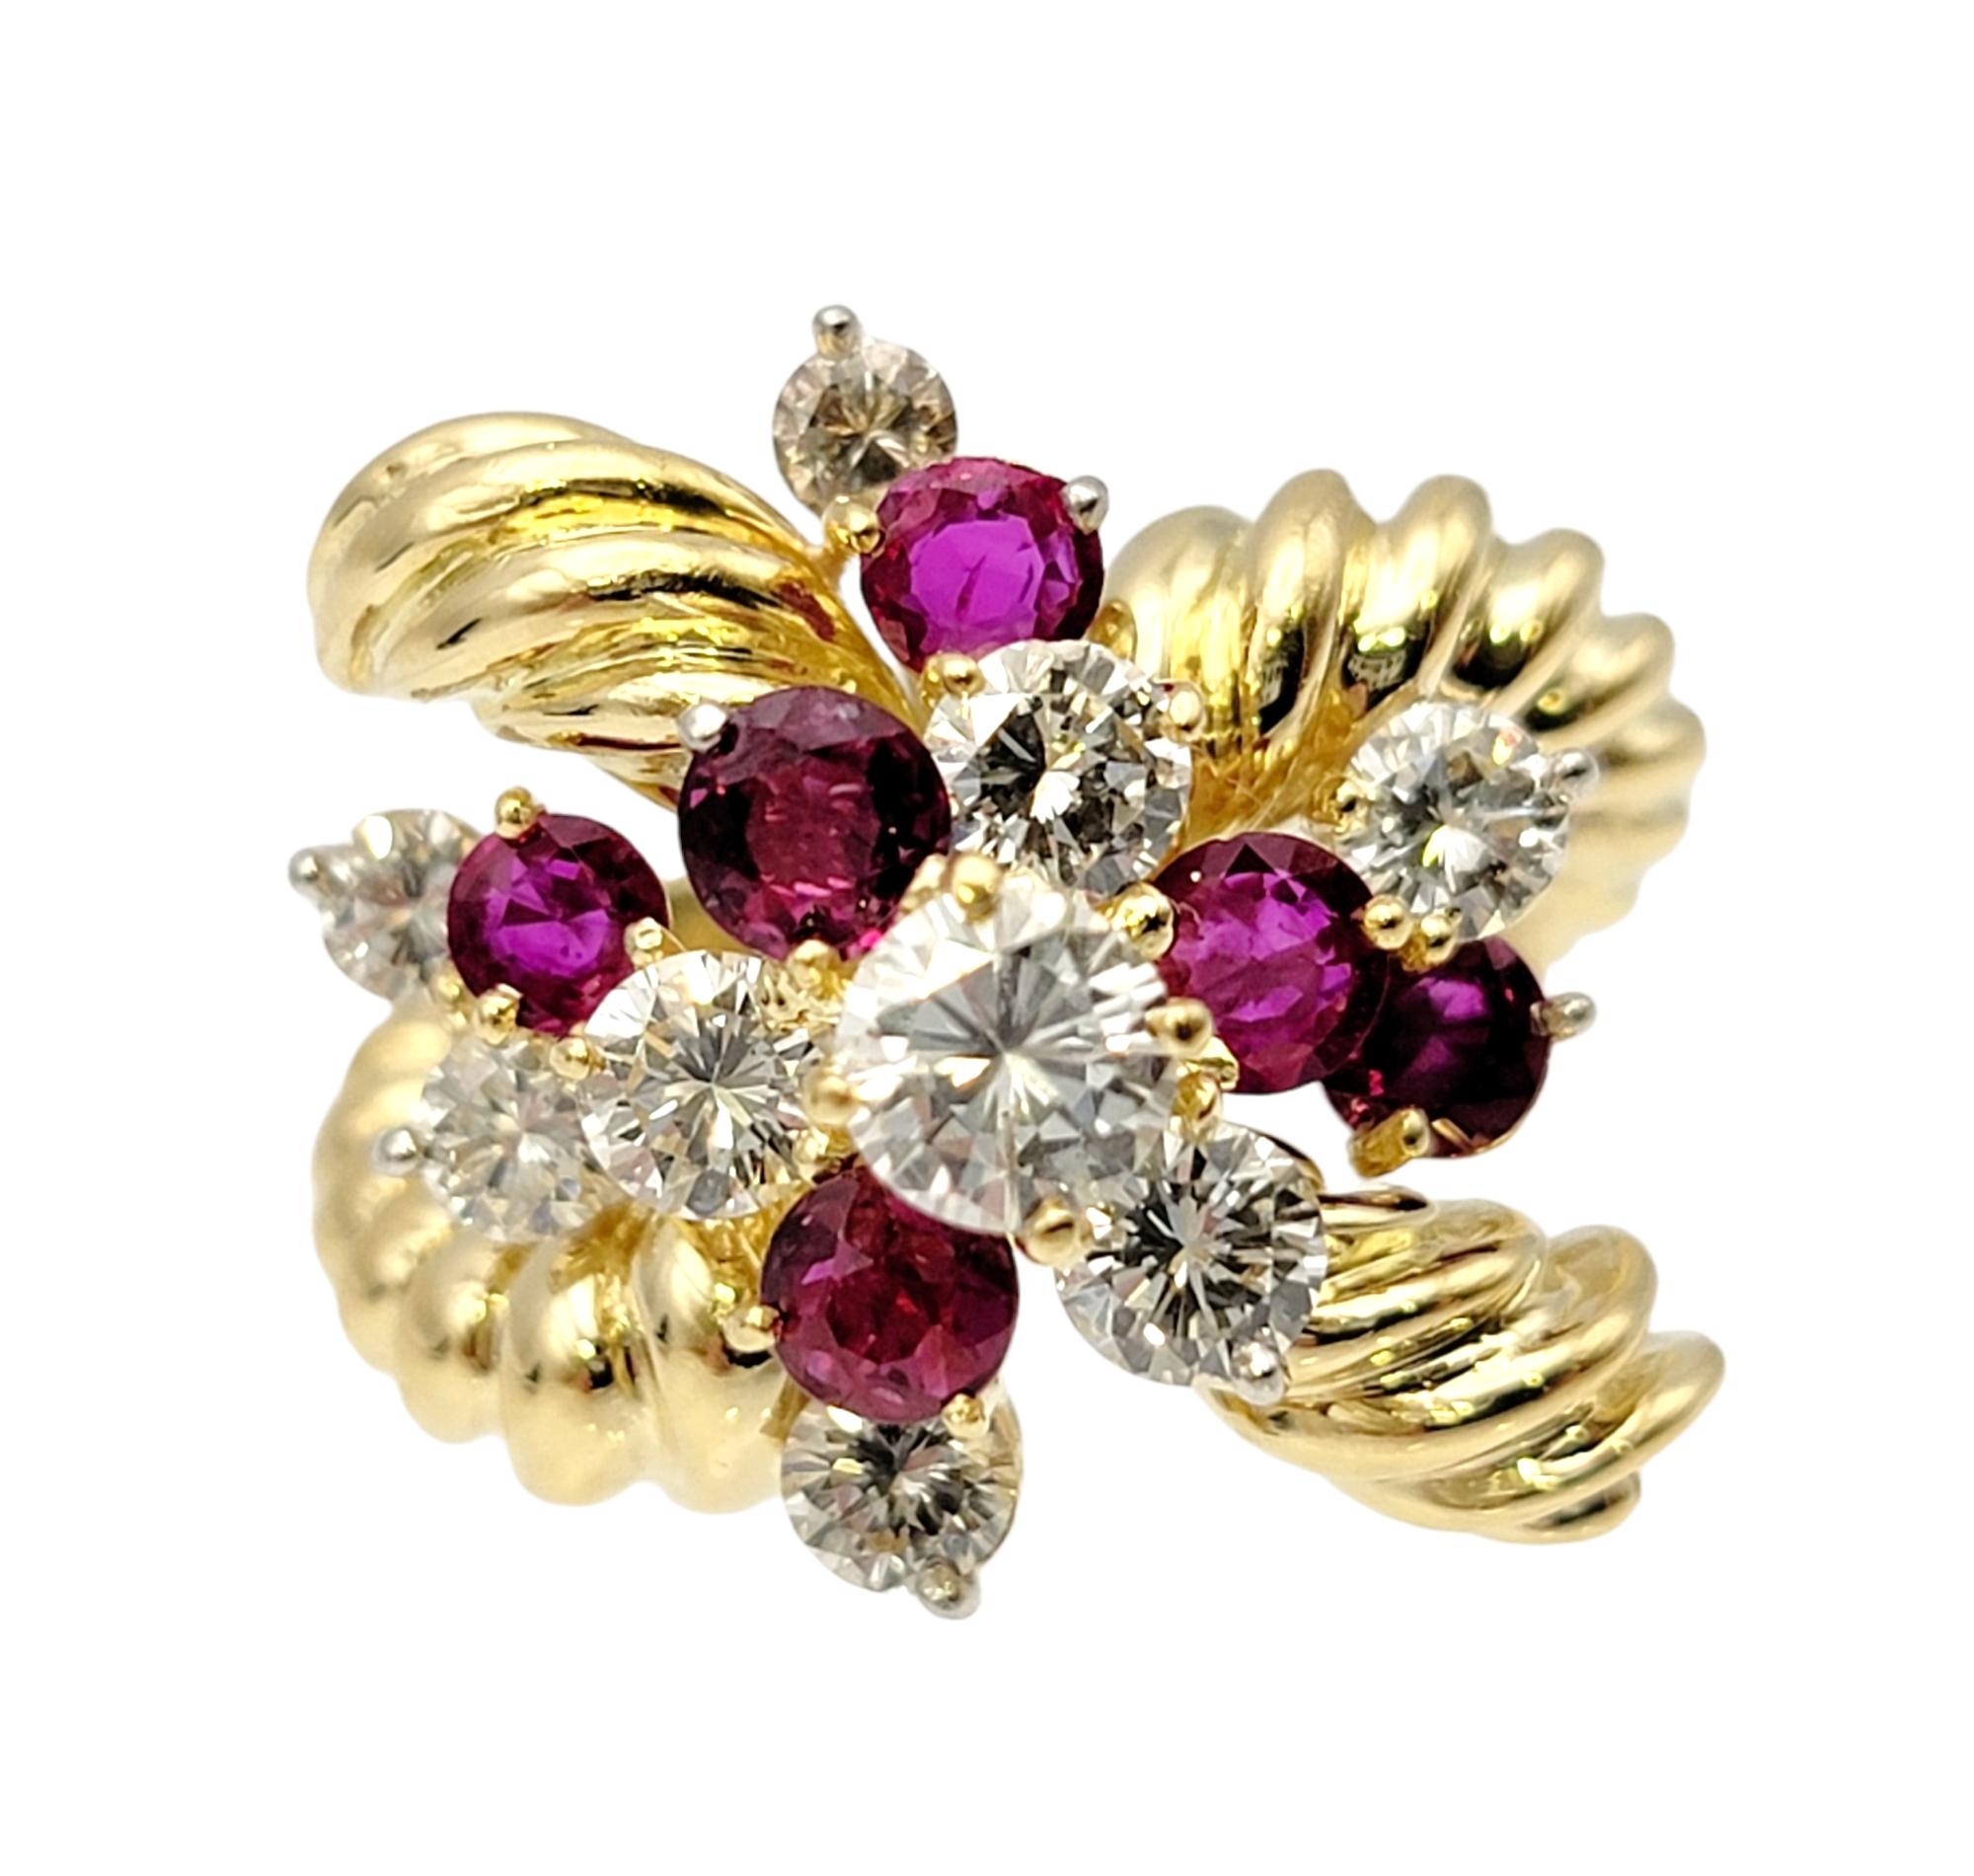 Ringgröße: 5.5

Dieser exquisite Ring mit Diamanten und Rubinen sprüht nur so vor Funkeln! Das einzigartige Design füllt den Finger mit glitzernder Eleganz und sorgt für einen echten WOW-Effekt. Die gestaffelte Anordnung lässt die natürlichen runden